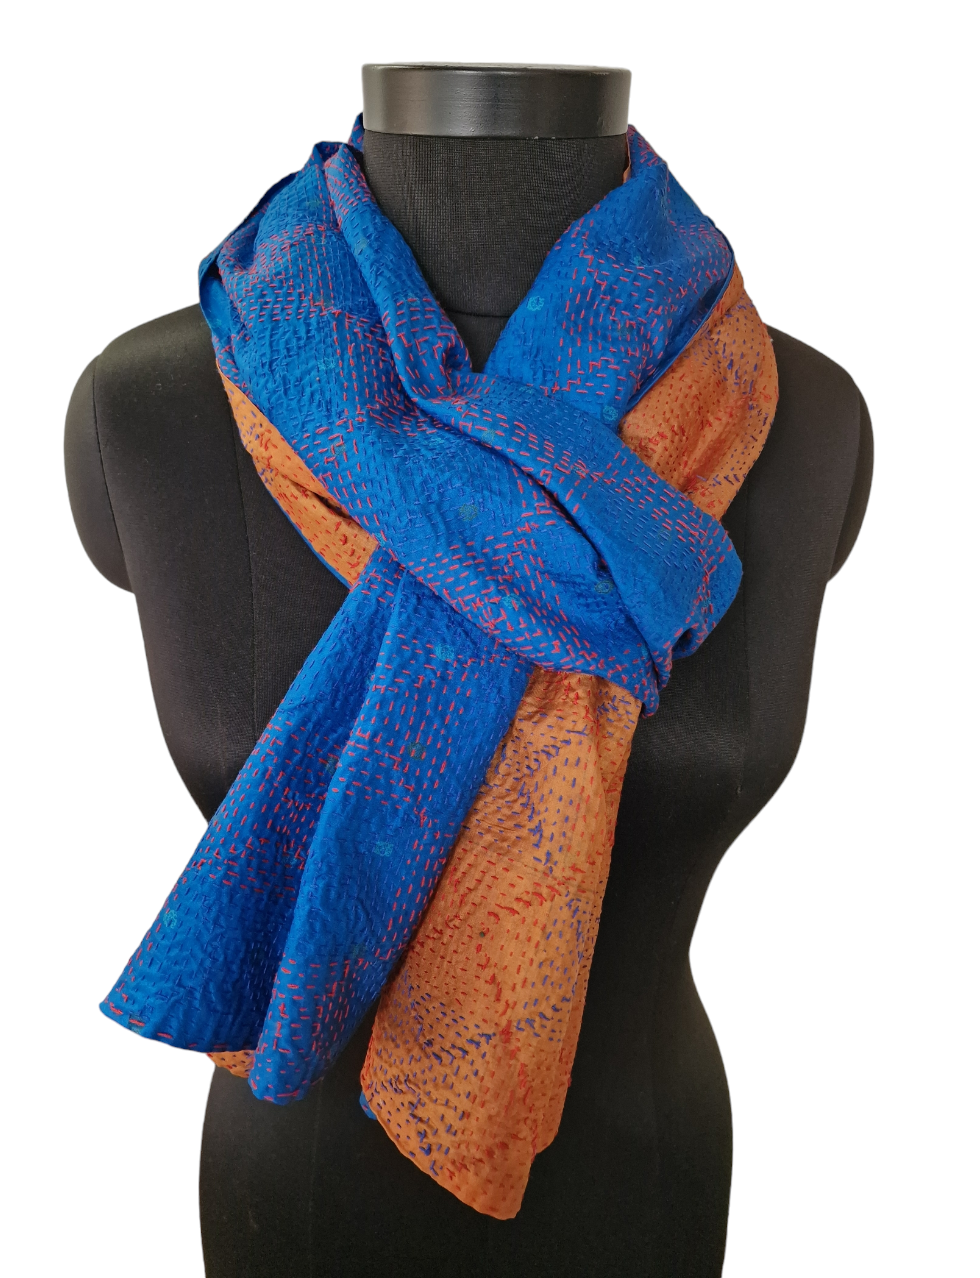 Håndlaget knallblått og varm oransje farget silkeskjerf med tråklet mønster(32)